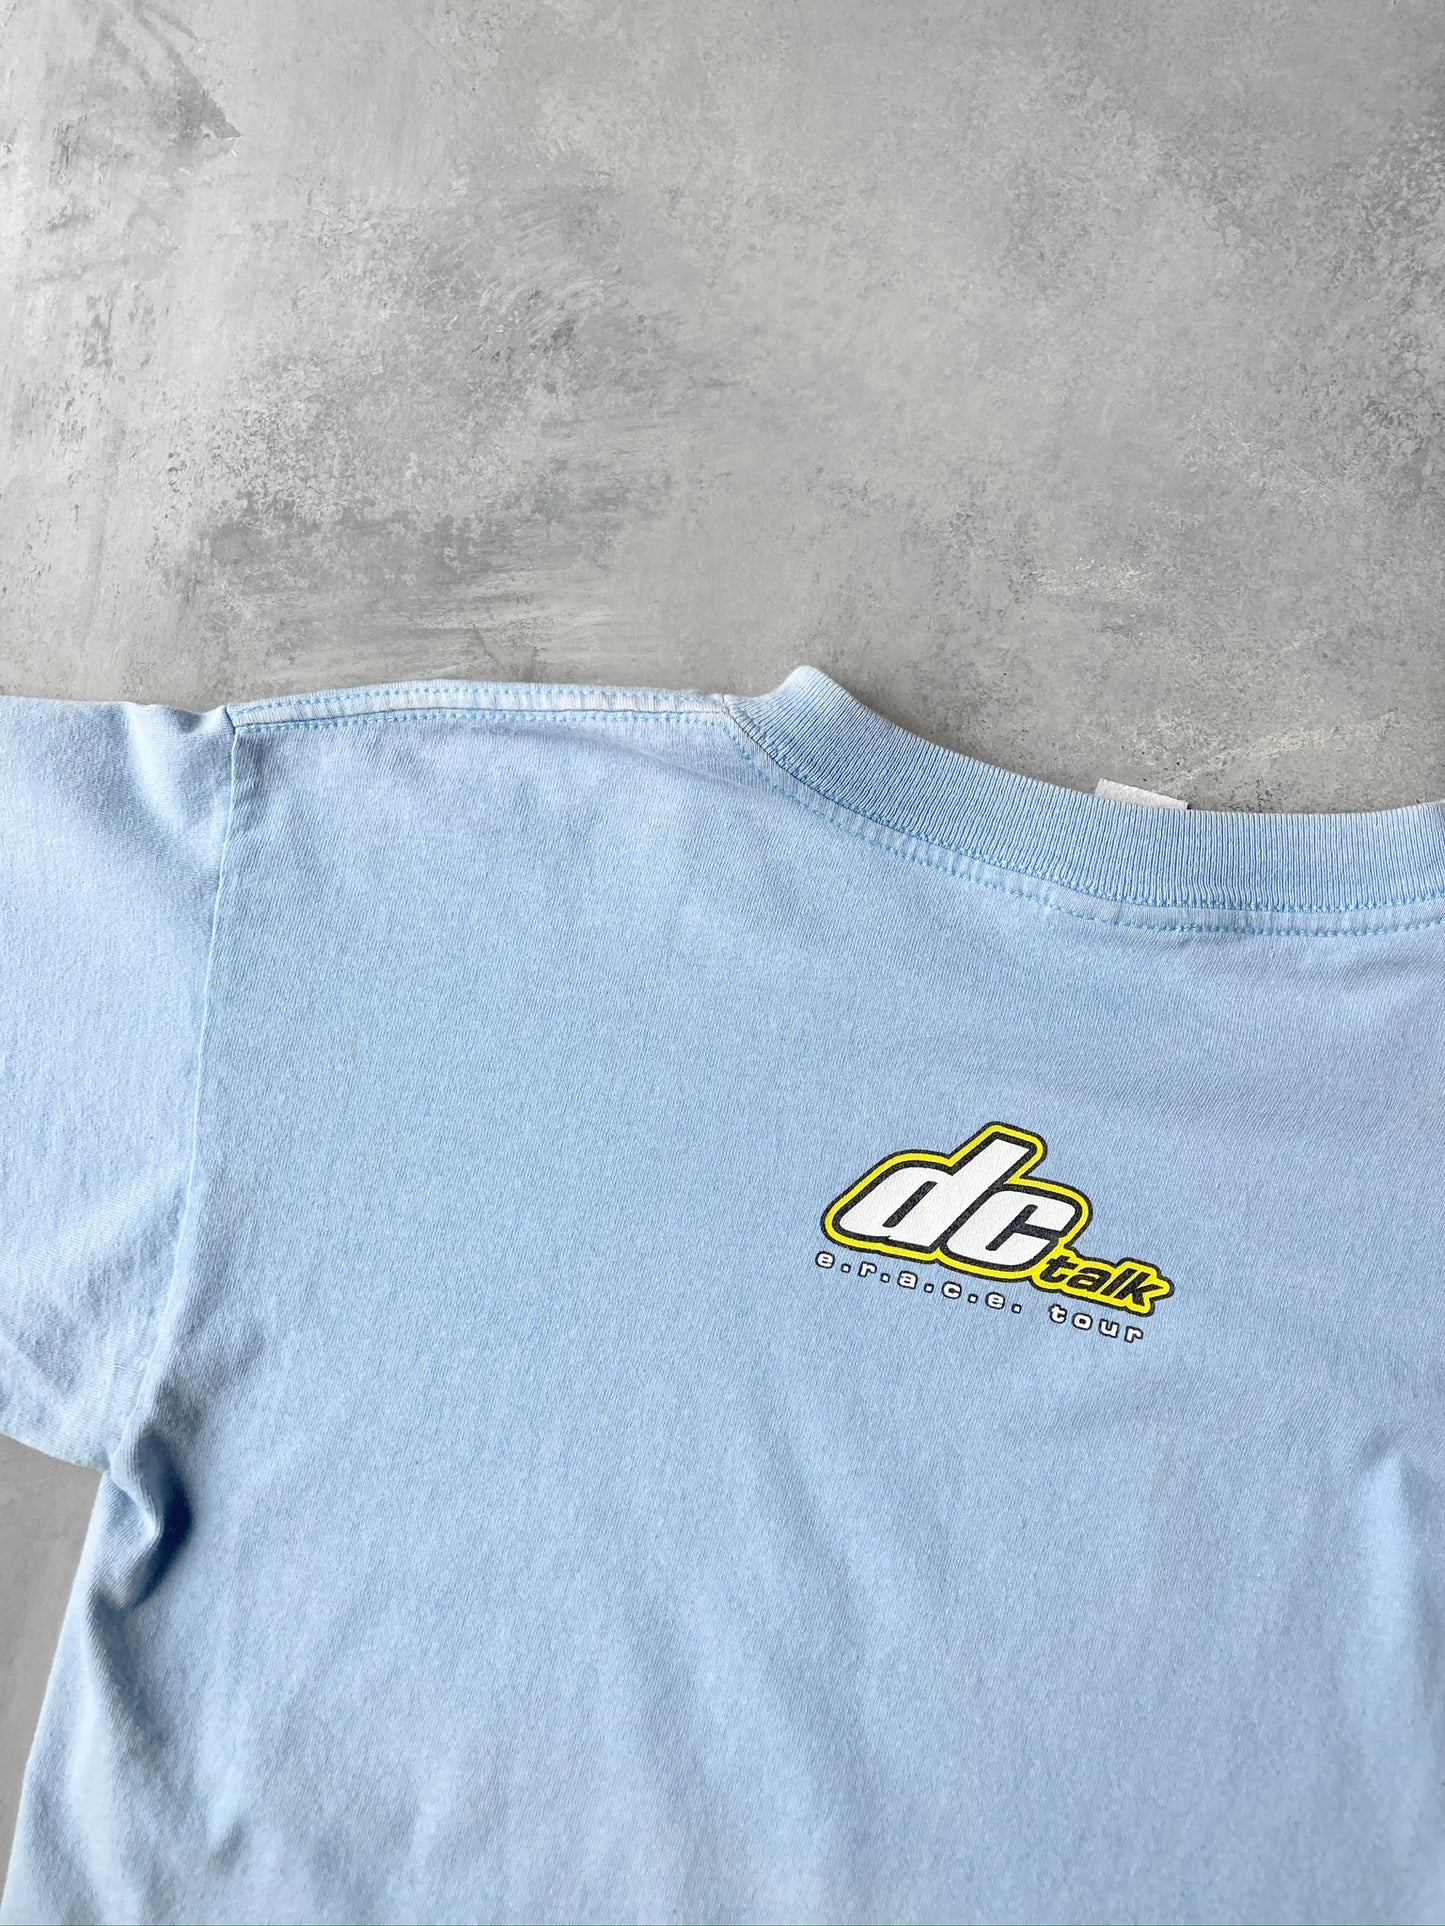 DC Talk Tour T-Shirt '98 - Medium